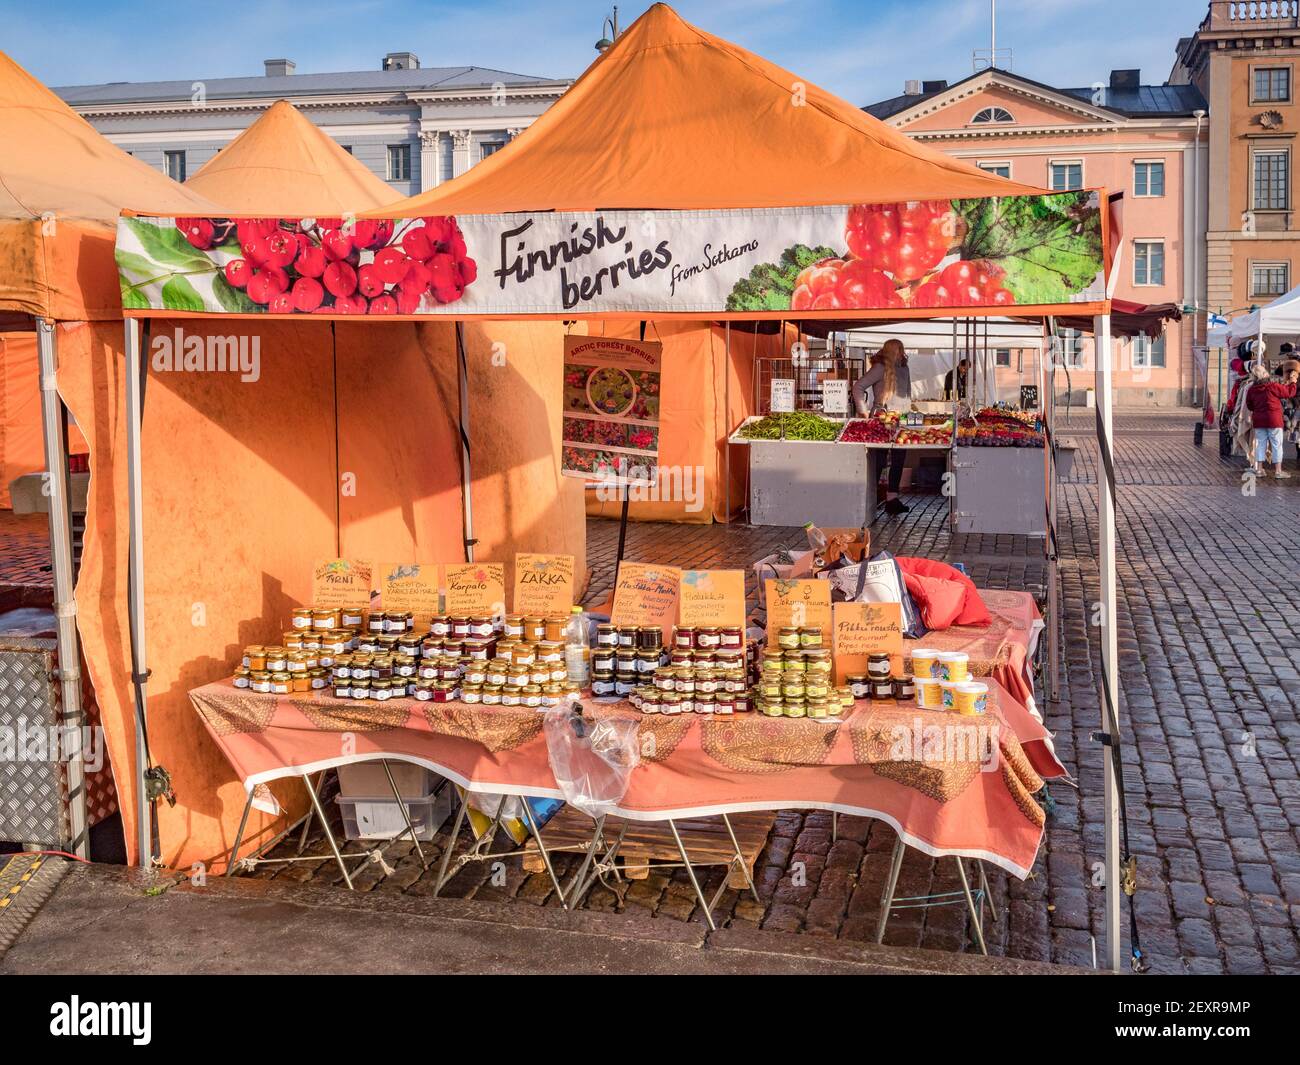 20 septembre 2018 : Helsinki, Finlande - marché bloqué sur un marché agricole de la place du marché, vendant des confitures faites de baies locales, telles que le nuberr Banque D'Images